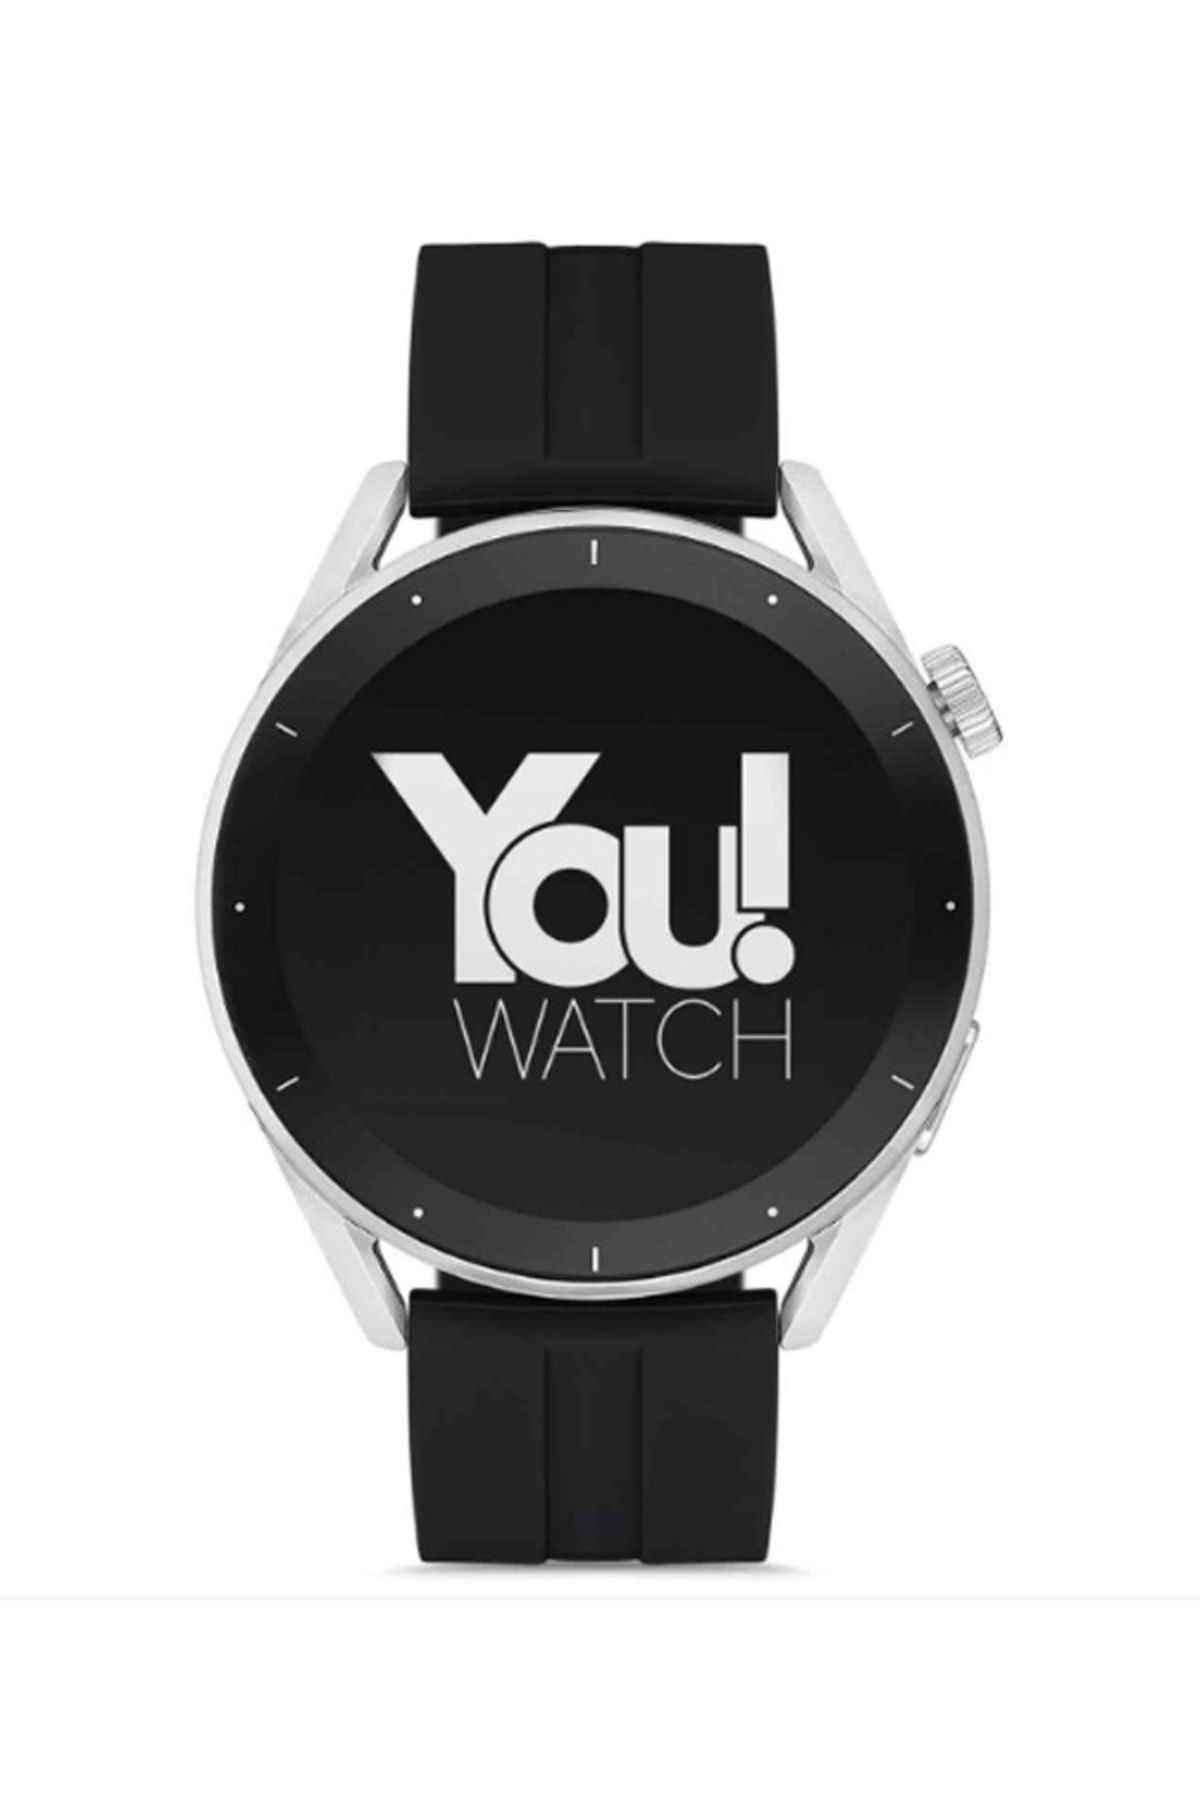 You Watch Youwatch R12-ar120 Gümüş Kasa & Siyah Silikon Kordon Akıllı Saat Ios Ve Android Uyumludur.